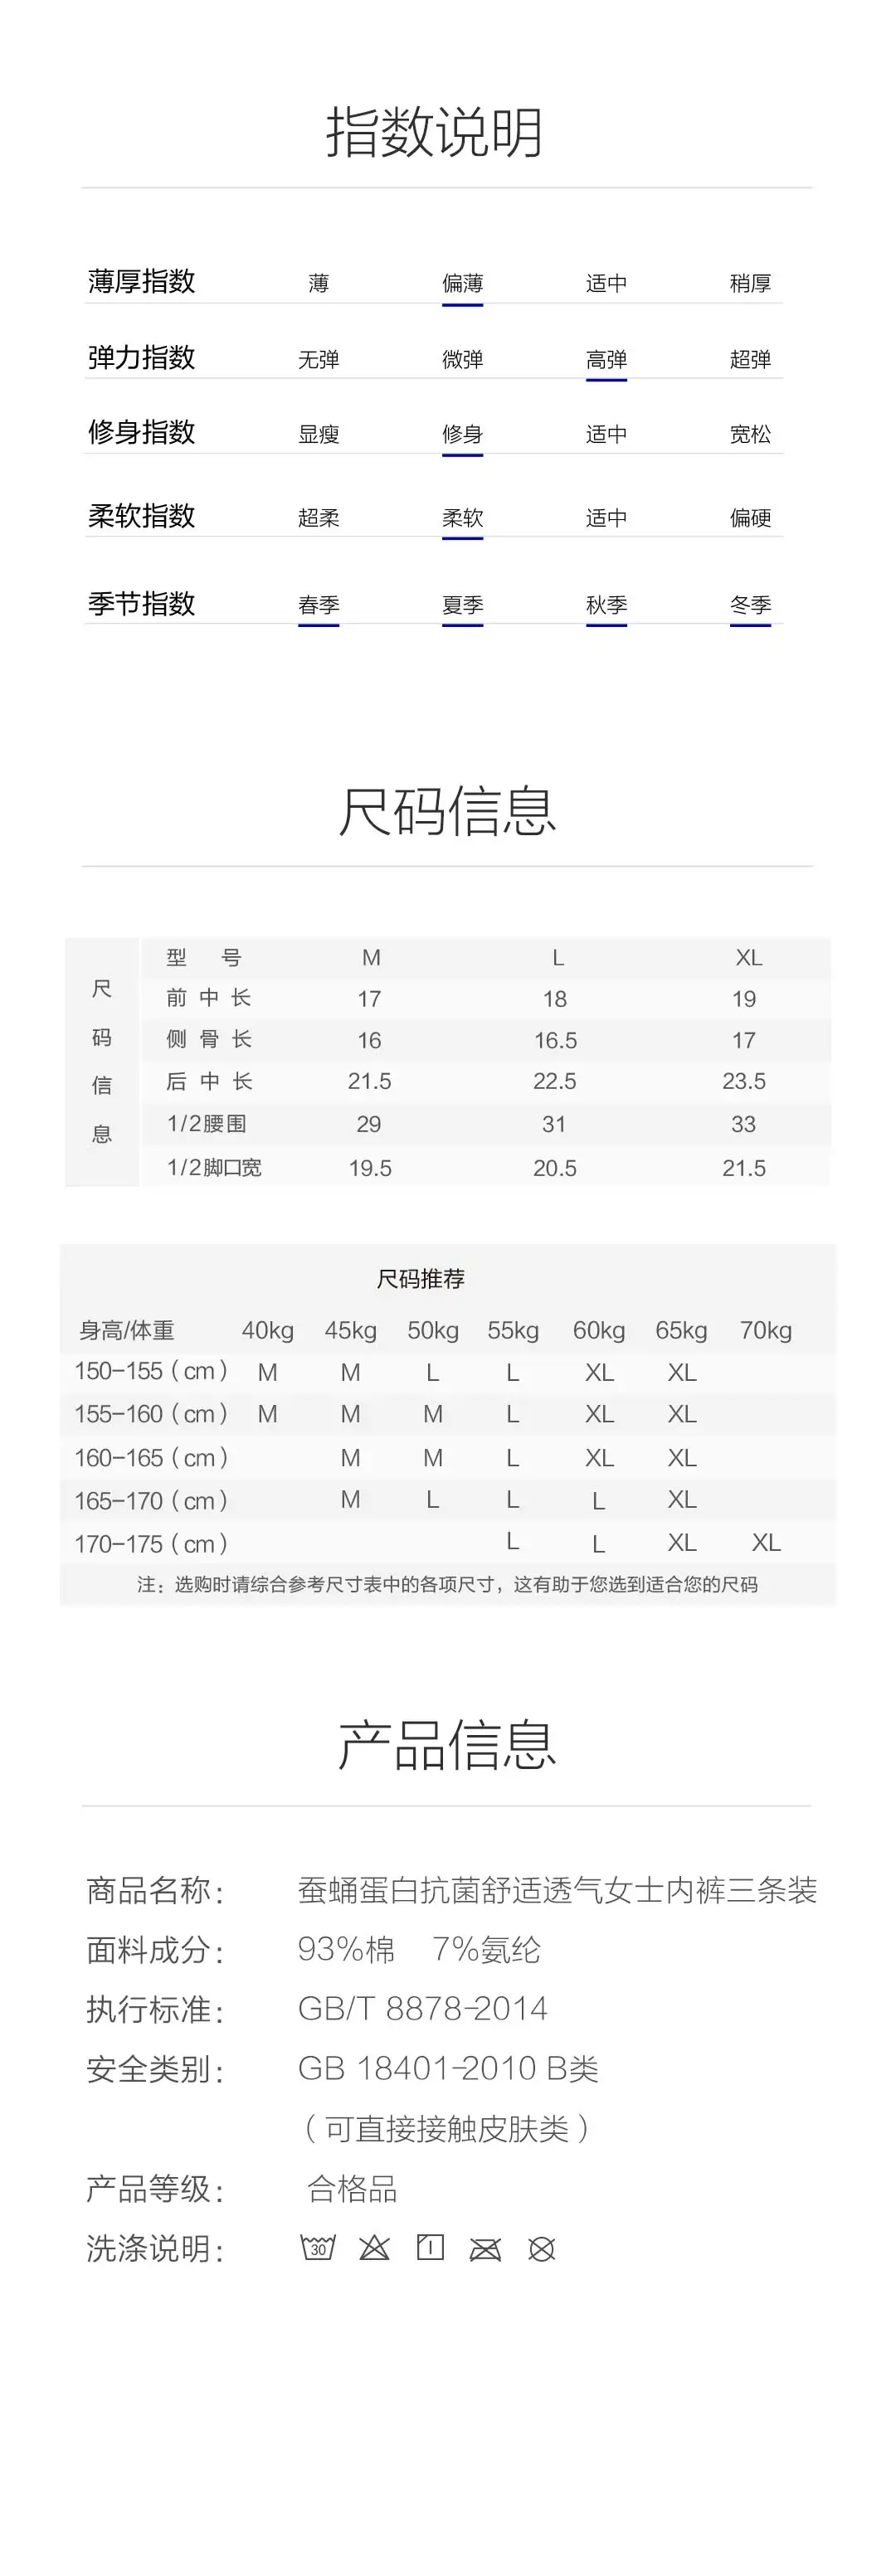 3 шт./партия Xiaomi Mijia Youpin Instant Me Silkworm Pupa протеин антибактериальное освежающее белье ощущение комфорта